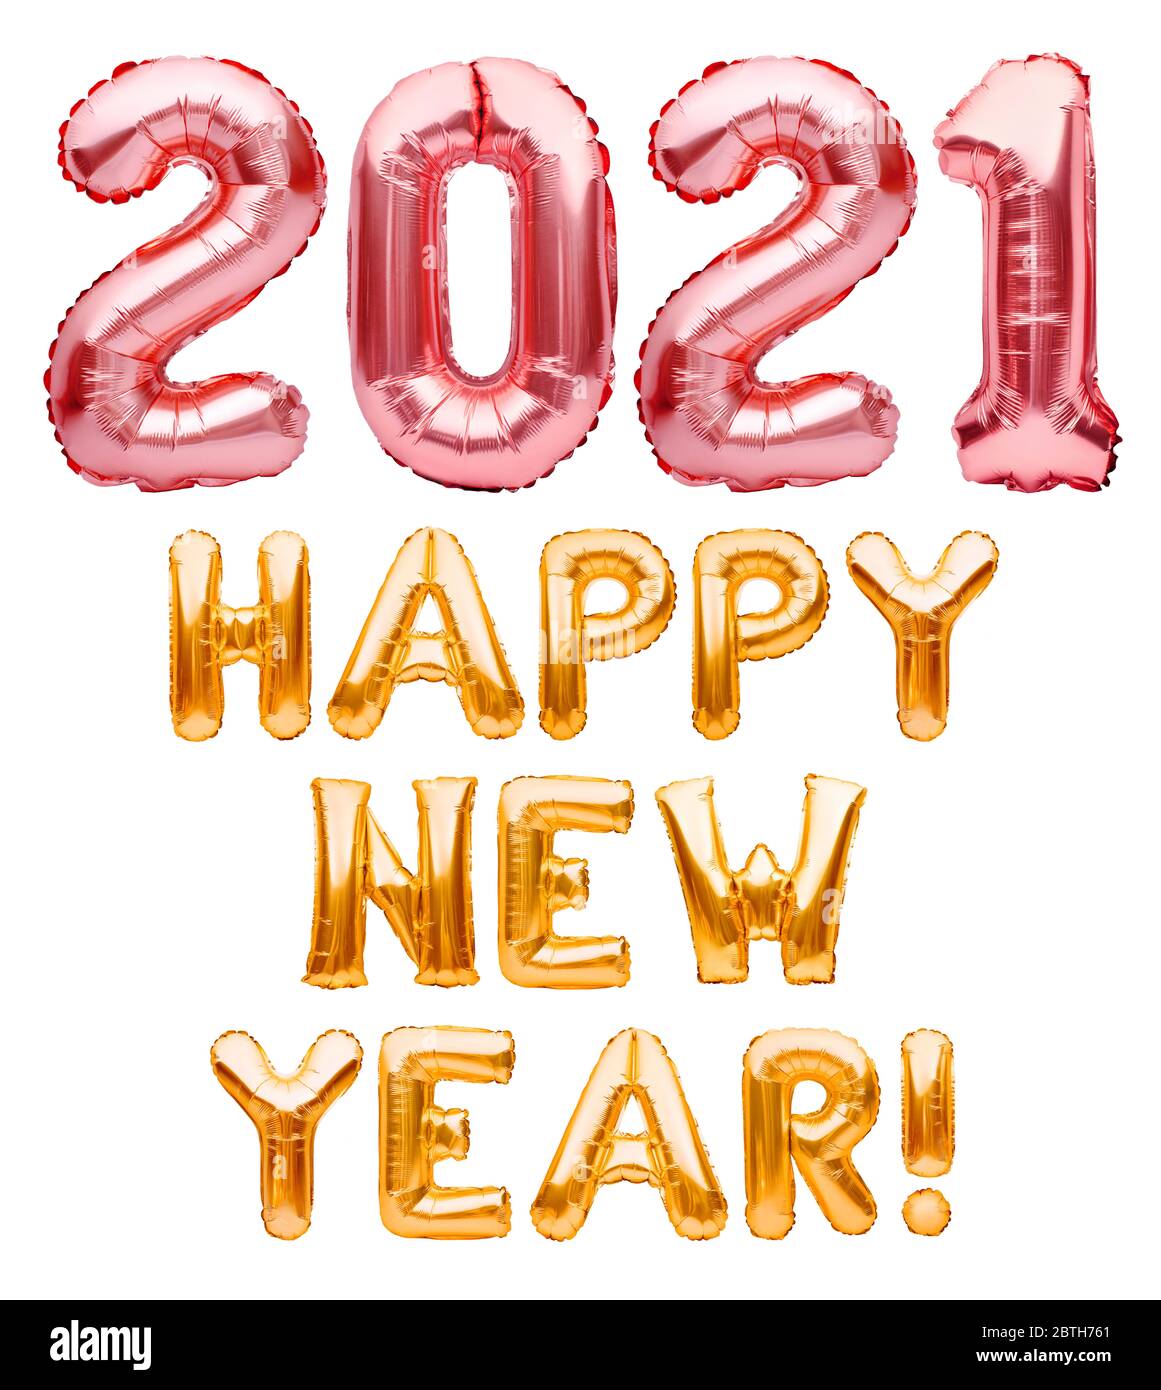 Bonne nouvelle année 2021 phrase faite de ballons gonflables roses et dorés isolés sur blanc. Ballons d'hélium rose et or formant bonne année 2021 Banque D'Images